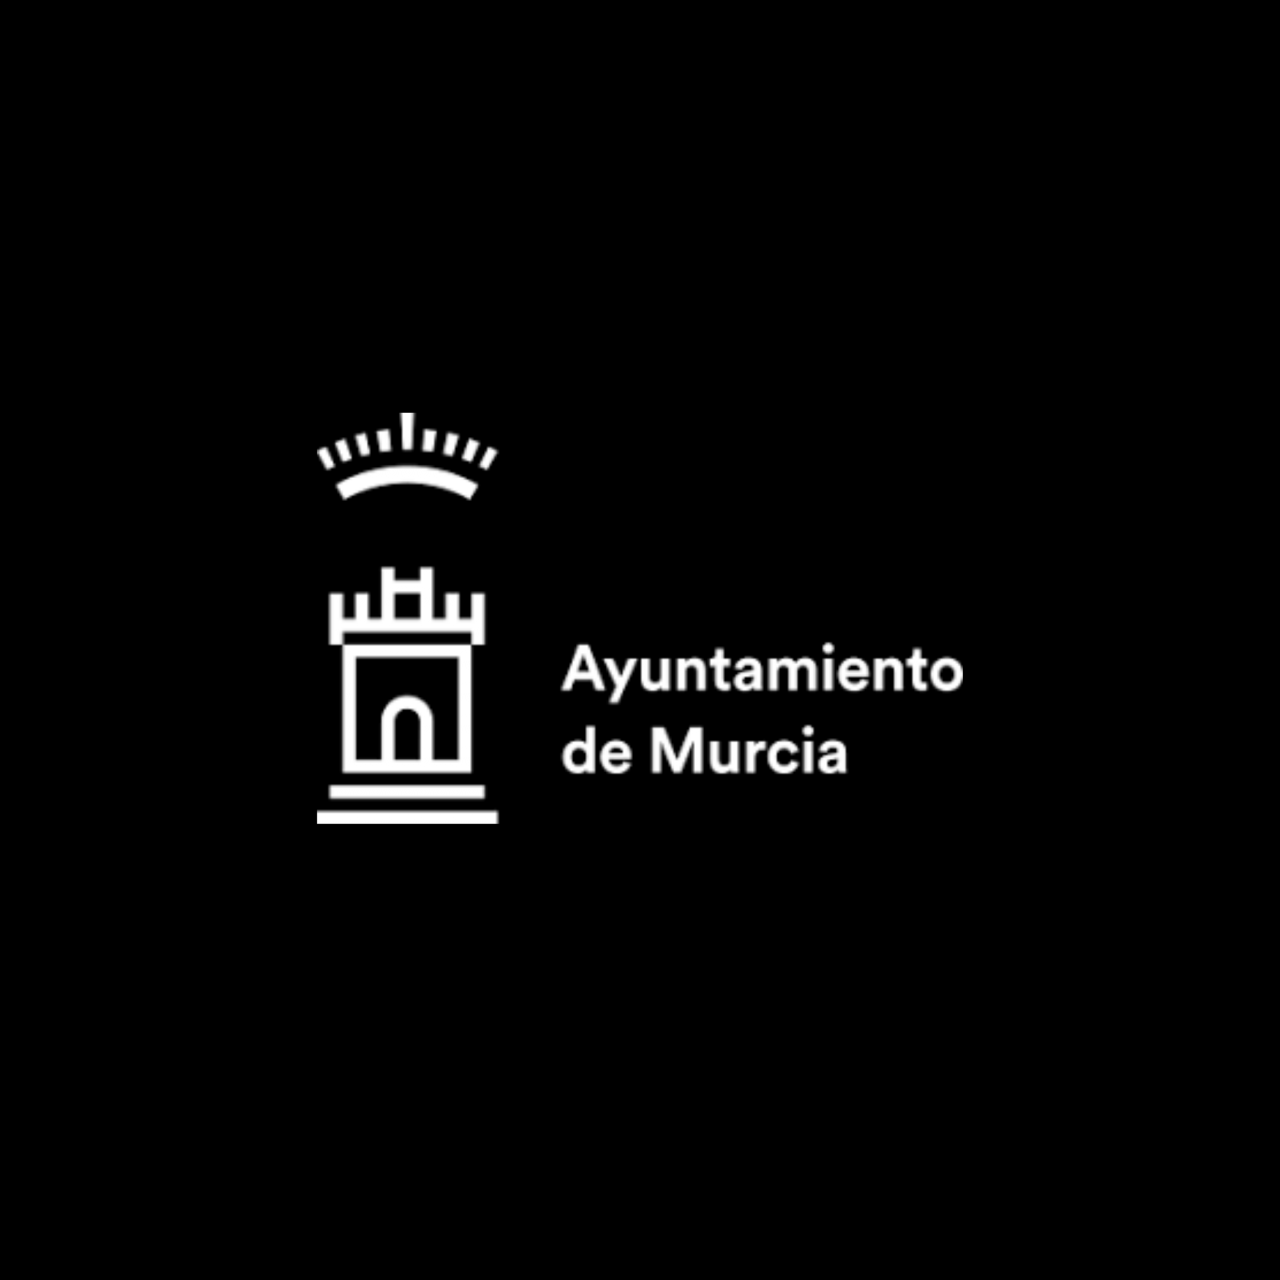 ayuntamiento-murcia-1280x1280.png